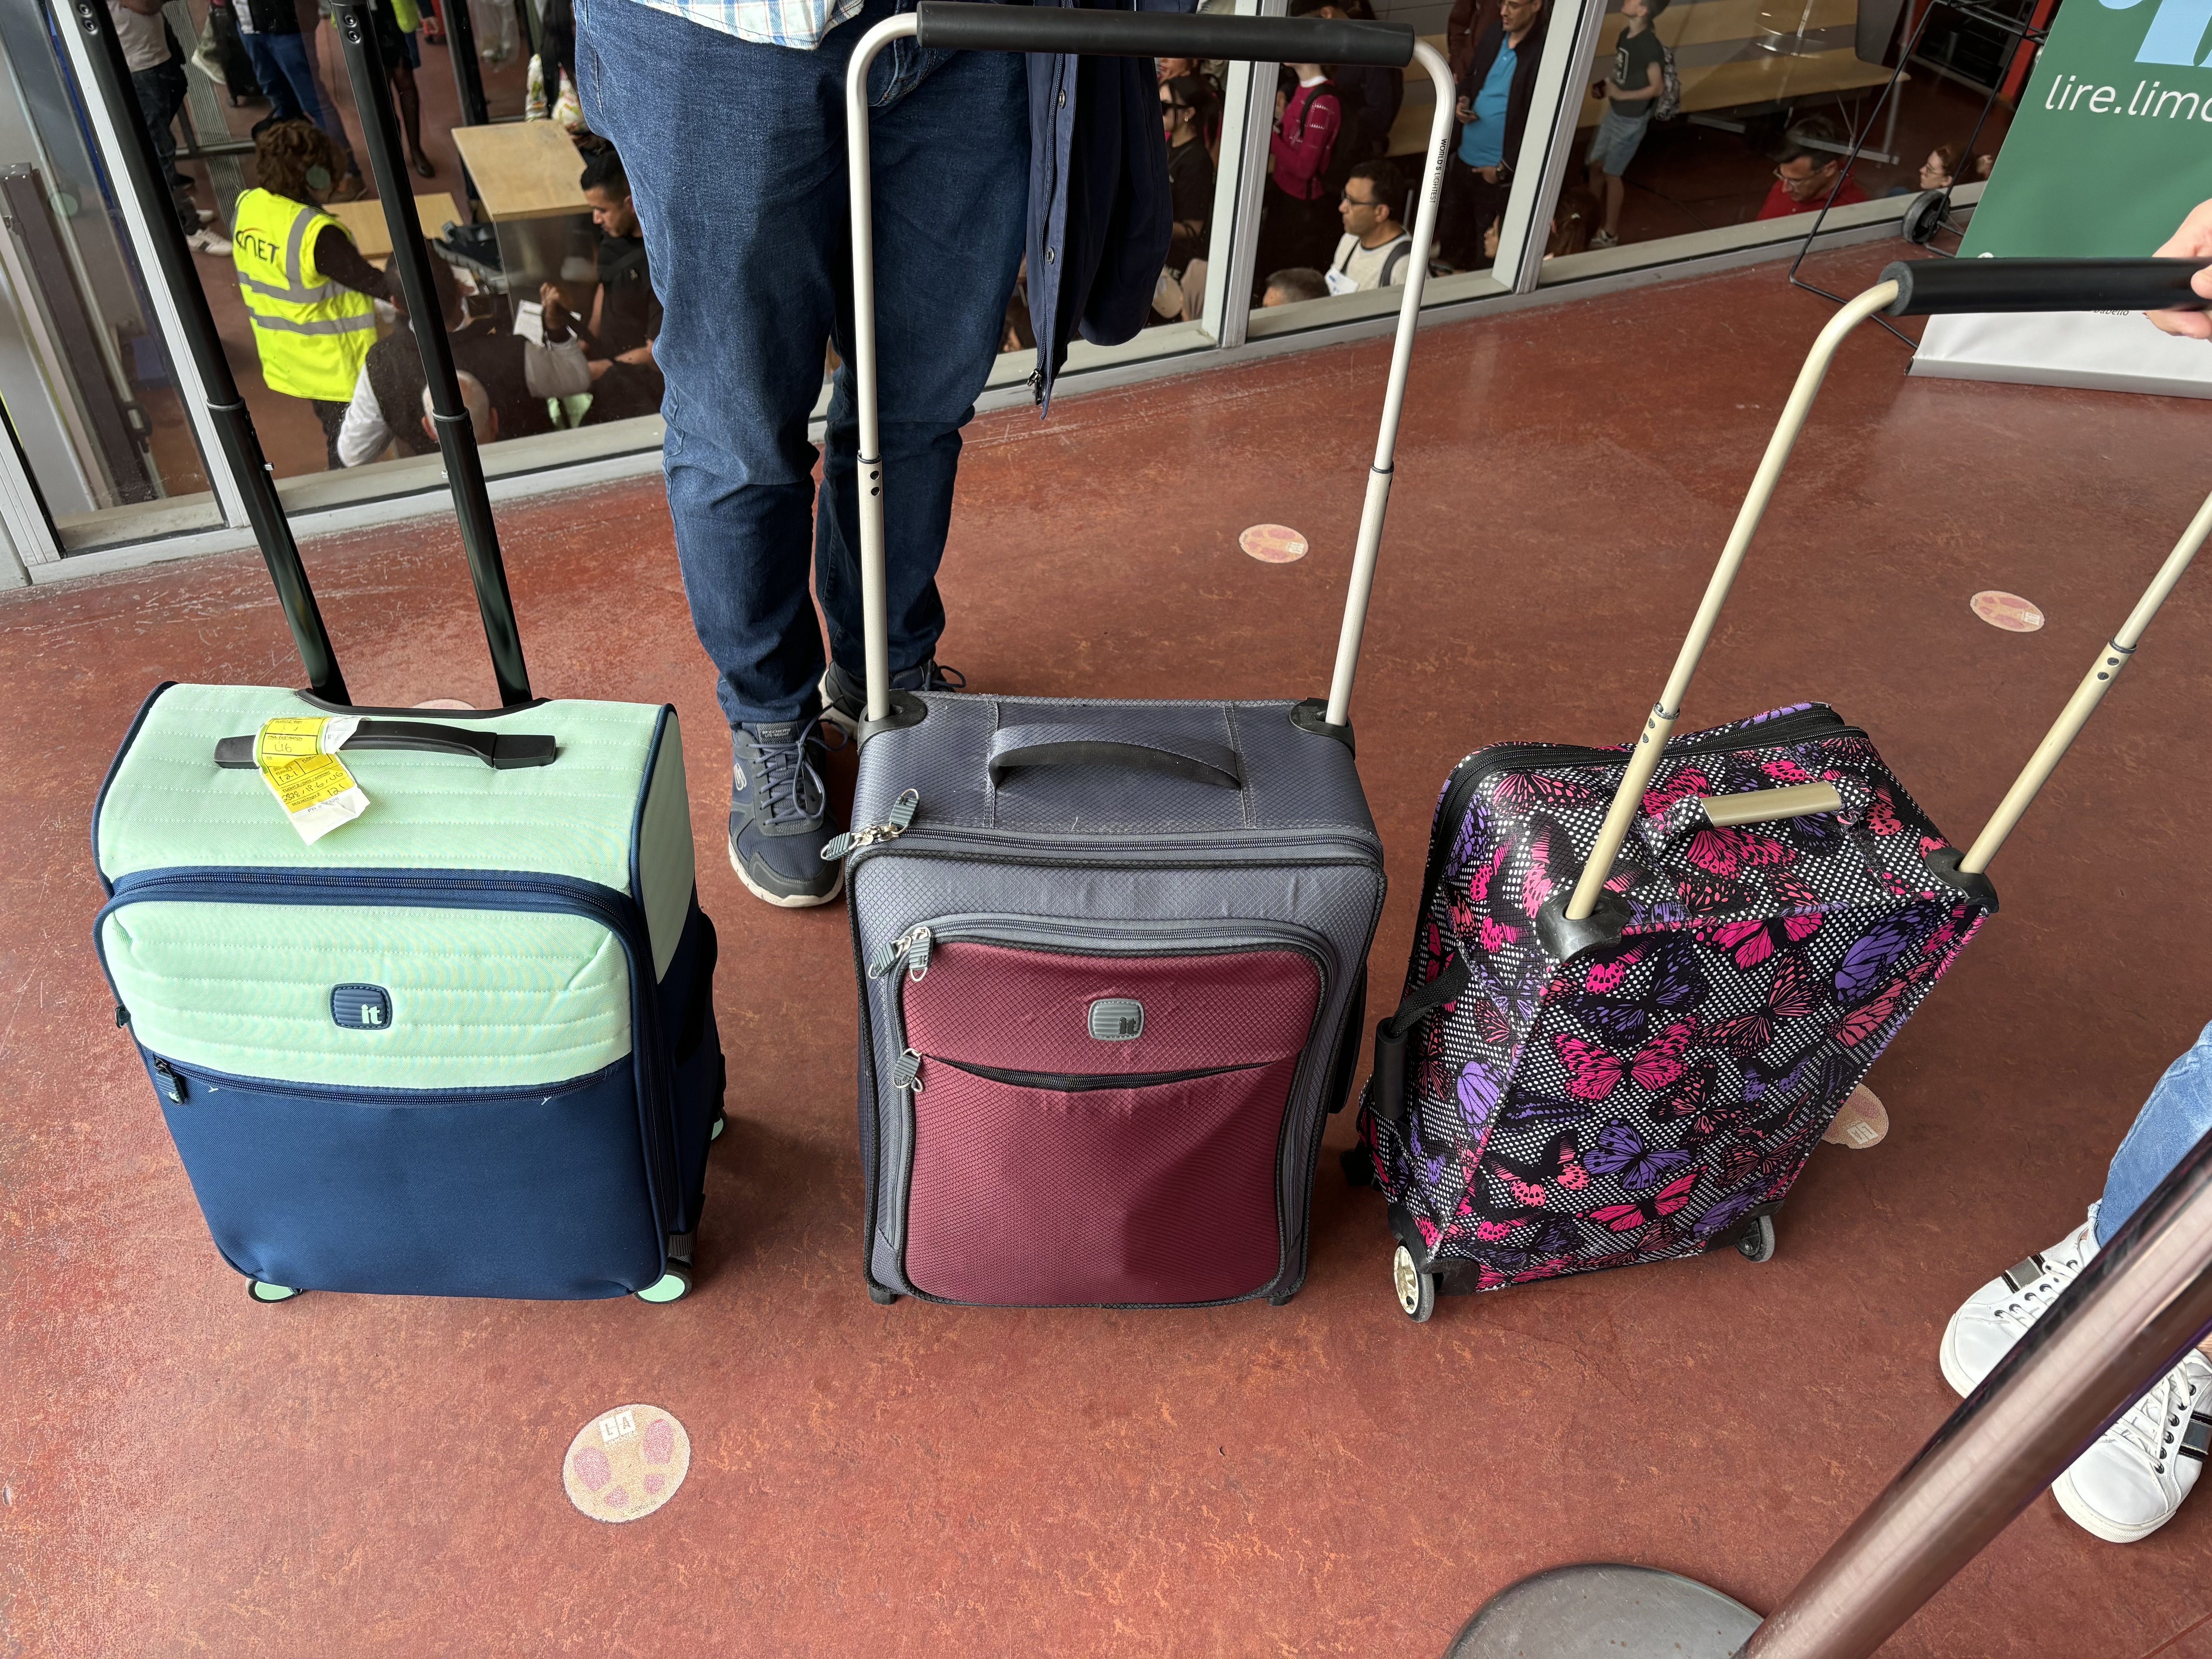 Algunas maletas serán revisadas por el personal, mientras que otras no.